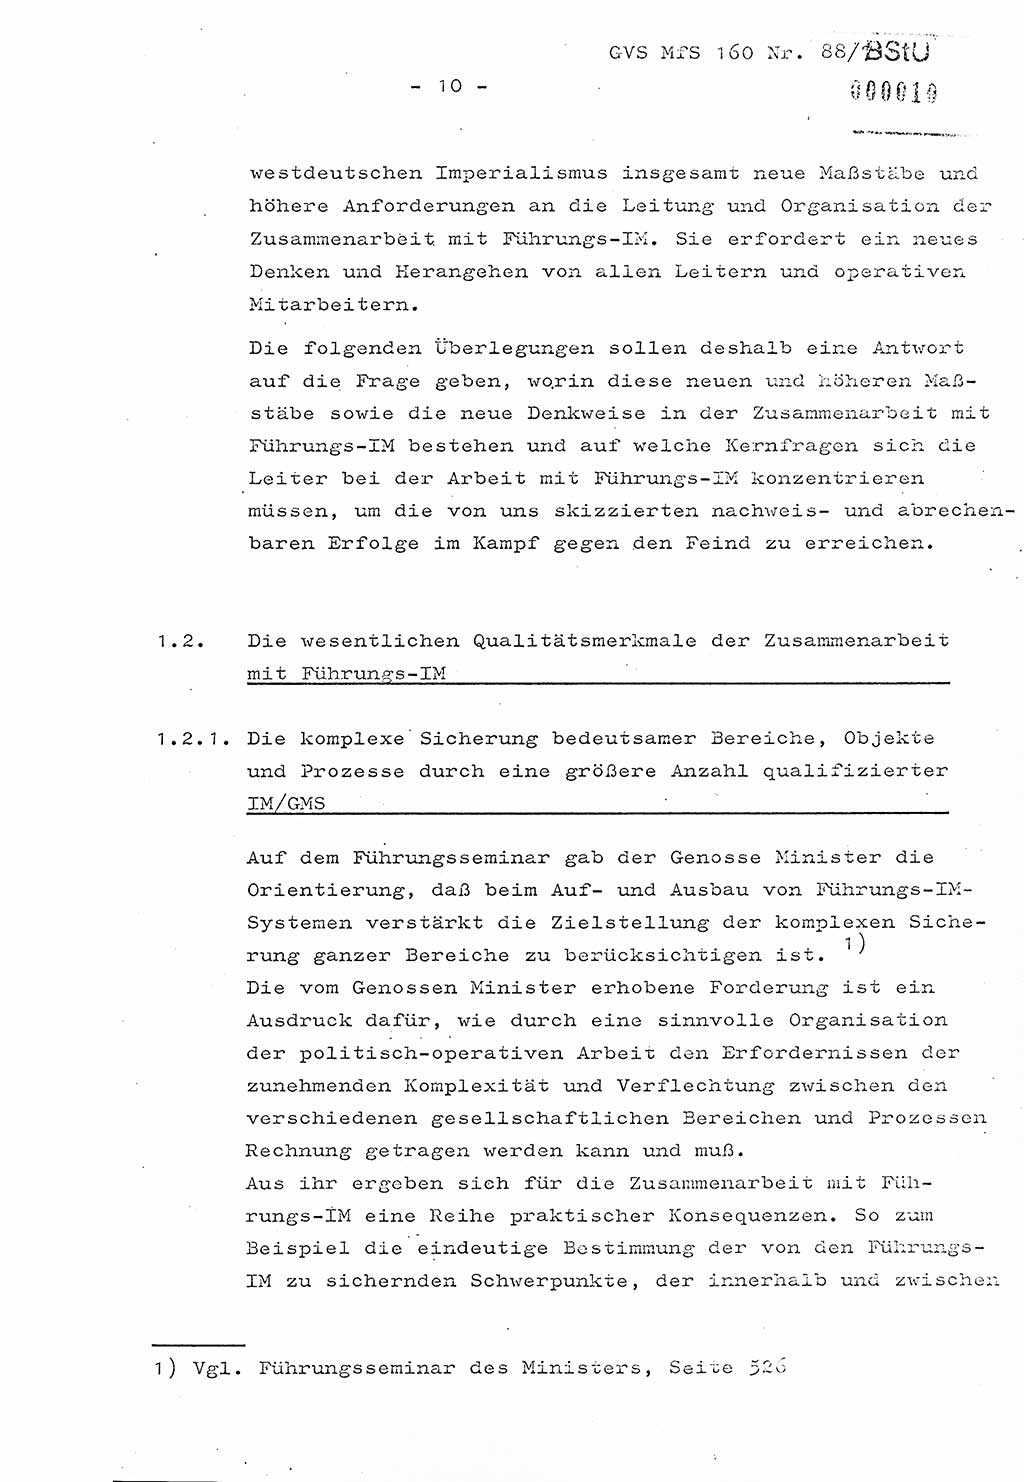 Dissertation Oberstleutnant Josef Schwarz (BV Schwerin), Major Fritz Amm (JHS), Hauptmann Peter Gräßler (JHS), Ministerium für Staatssicherheit (MfS) [Deutsche Demokratische Republik (DDR)], Juristische Hochschule (JHS), Geheime Verschlußsache (GVS) 160-88/71, Potsdam 1972, Seite 10 (Diss. MfS DDR JHS GVS 160-88/71 1972, S. 10)